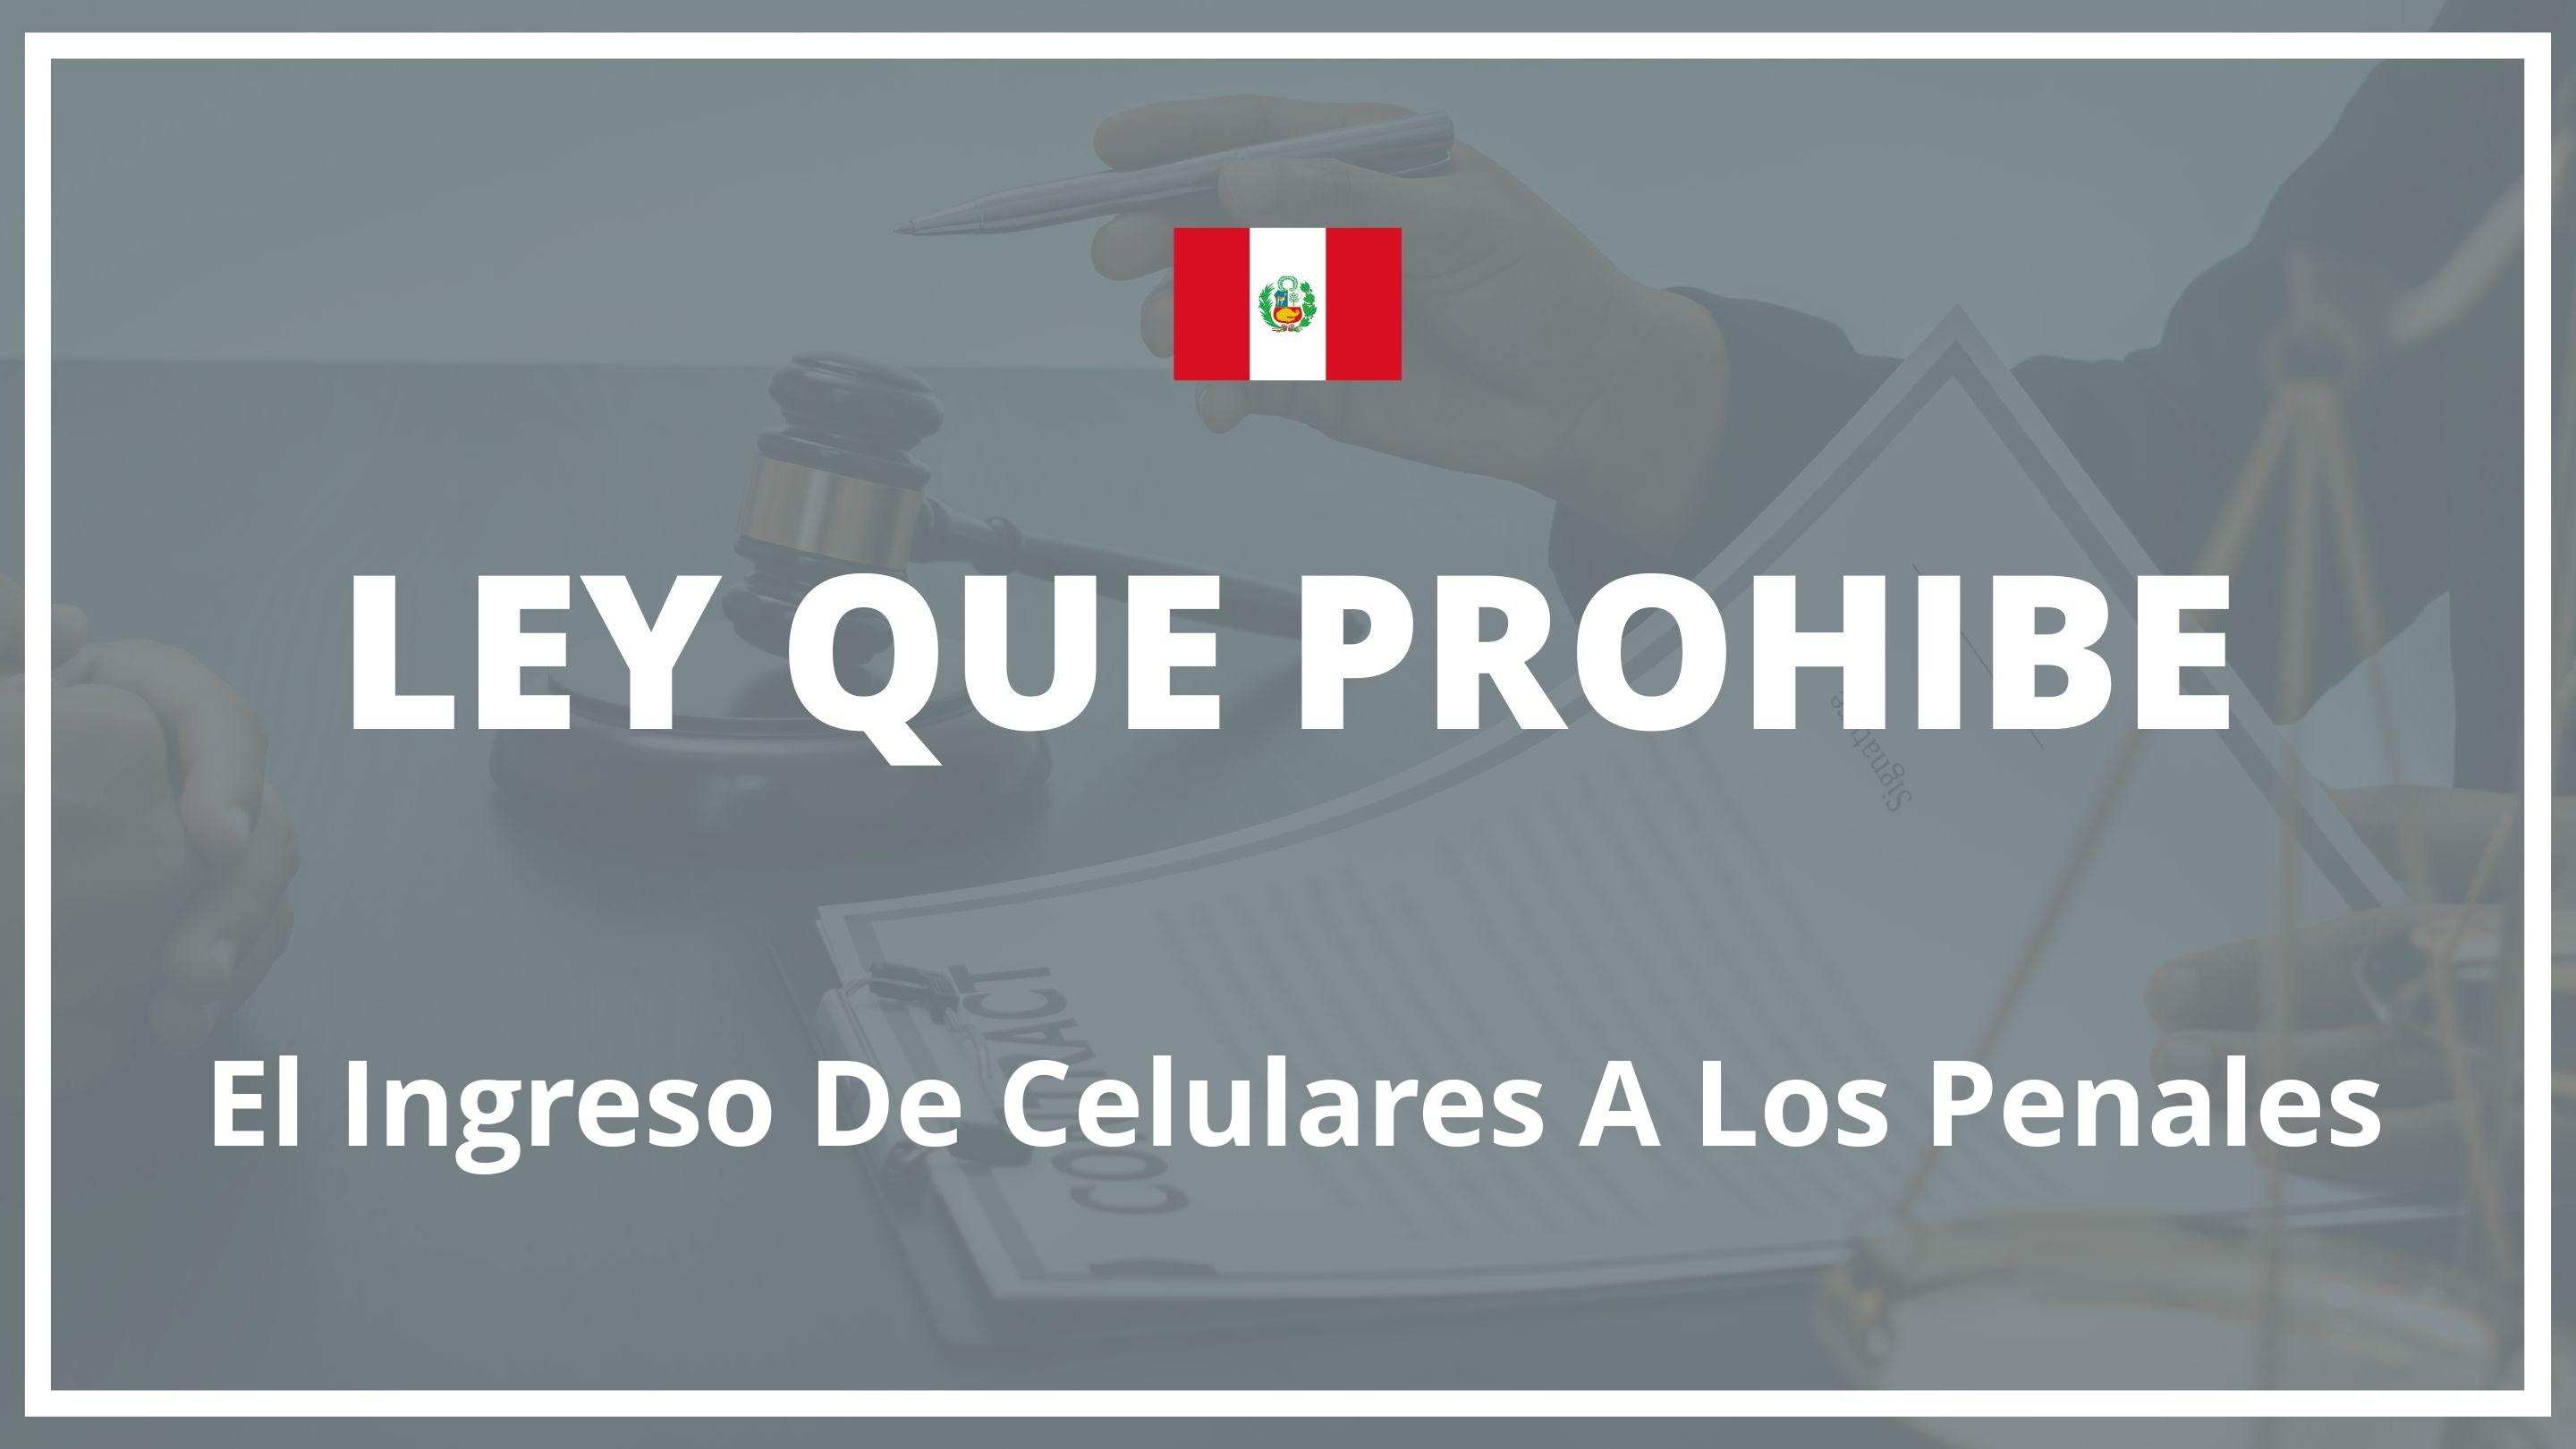 Ley que prohibe el ingreso de celulares a los penales Peru